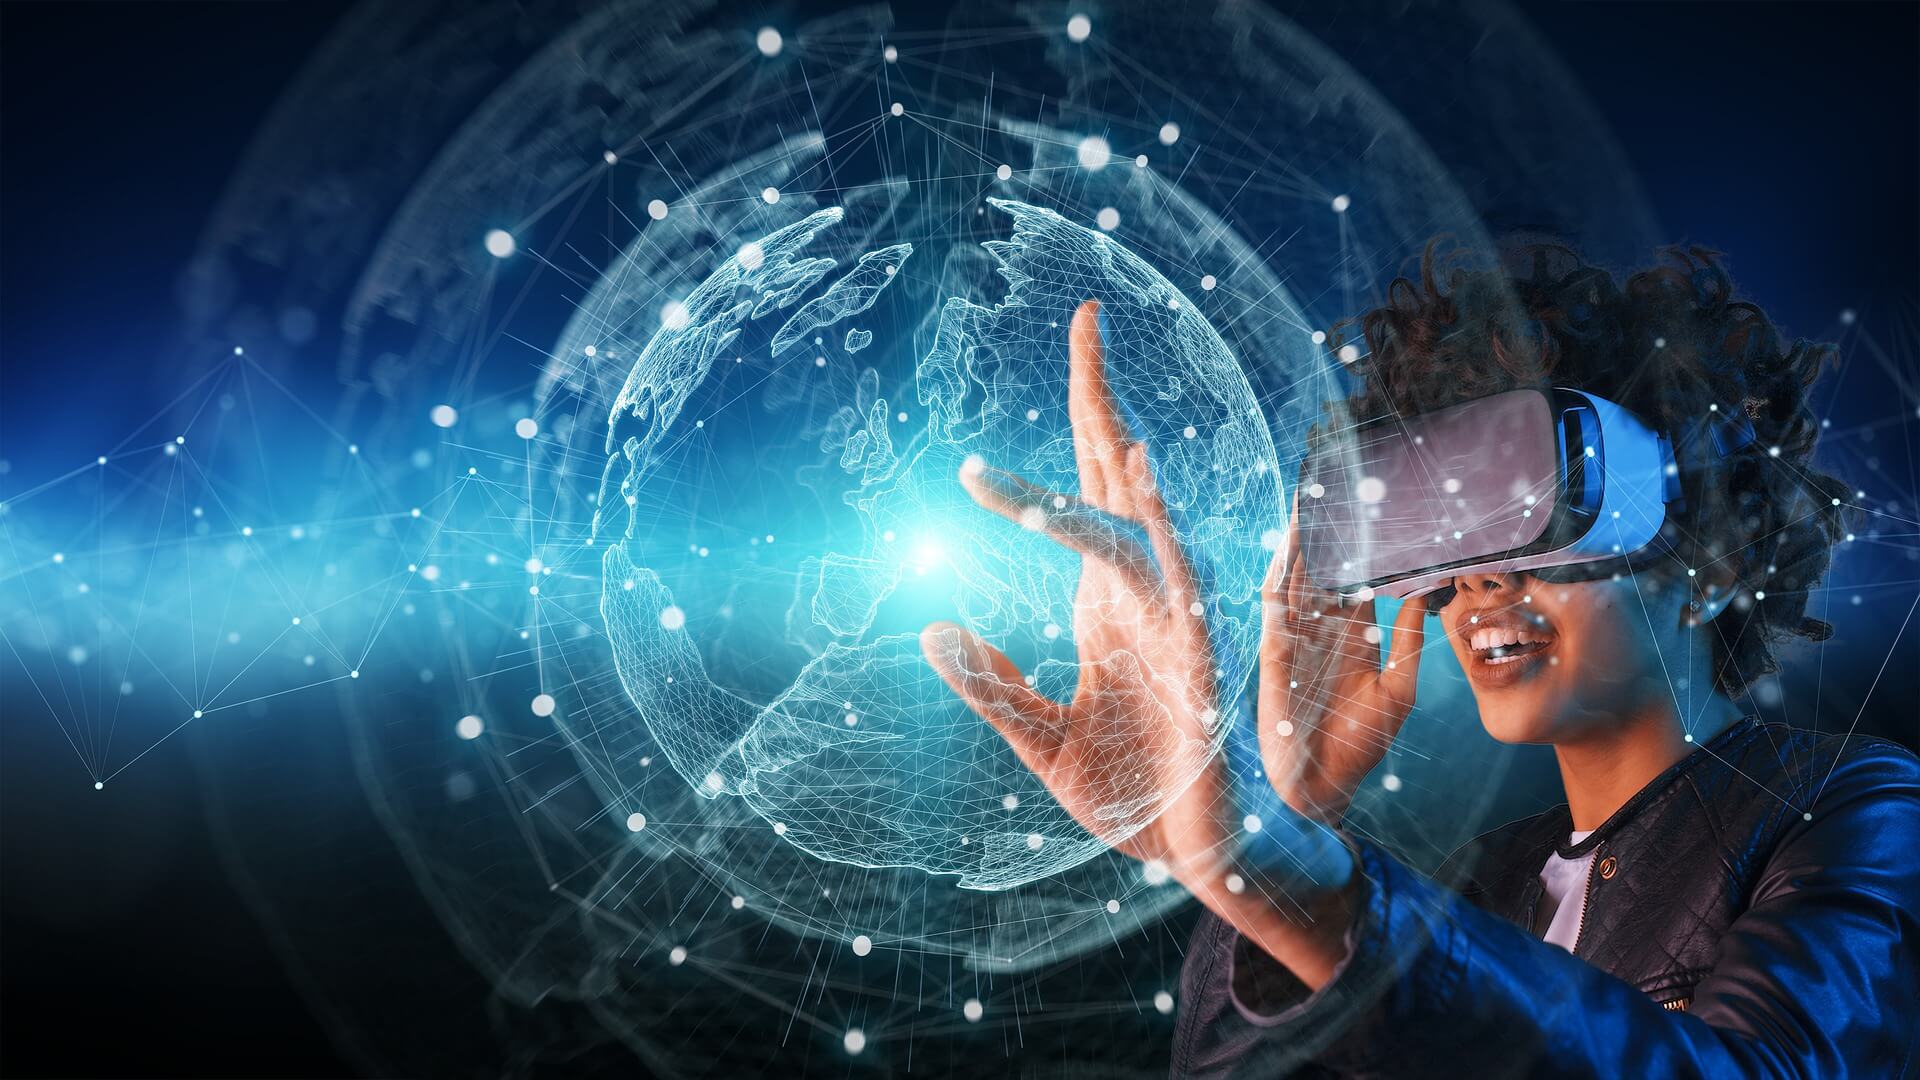 图片展示一位戴着虚拟现实头盔的人，正伸手触碰光线构成的地球仪，体现科技与虚拟互动的现代场景。